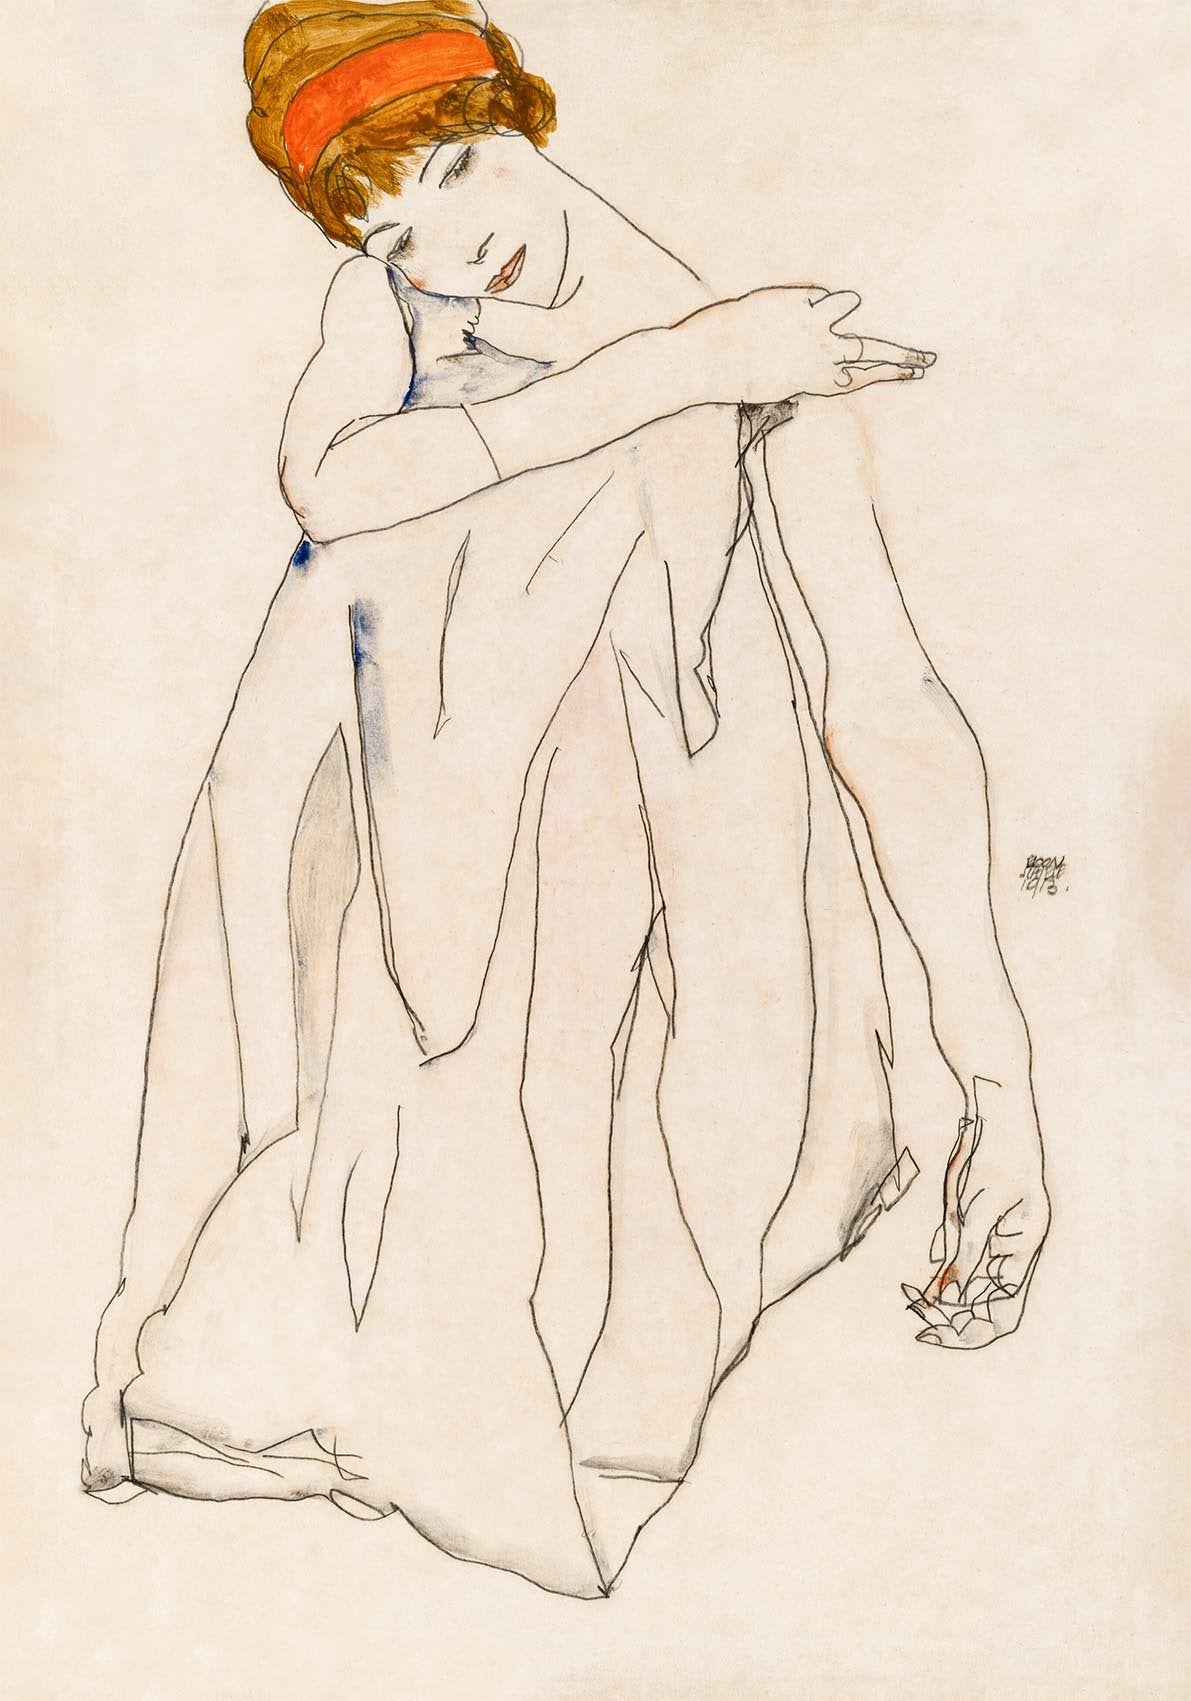 The Dancer (Die Tänzerin), 1913 by Egon Schiele